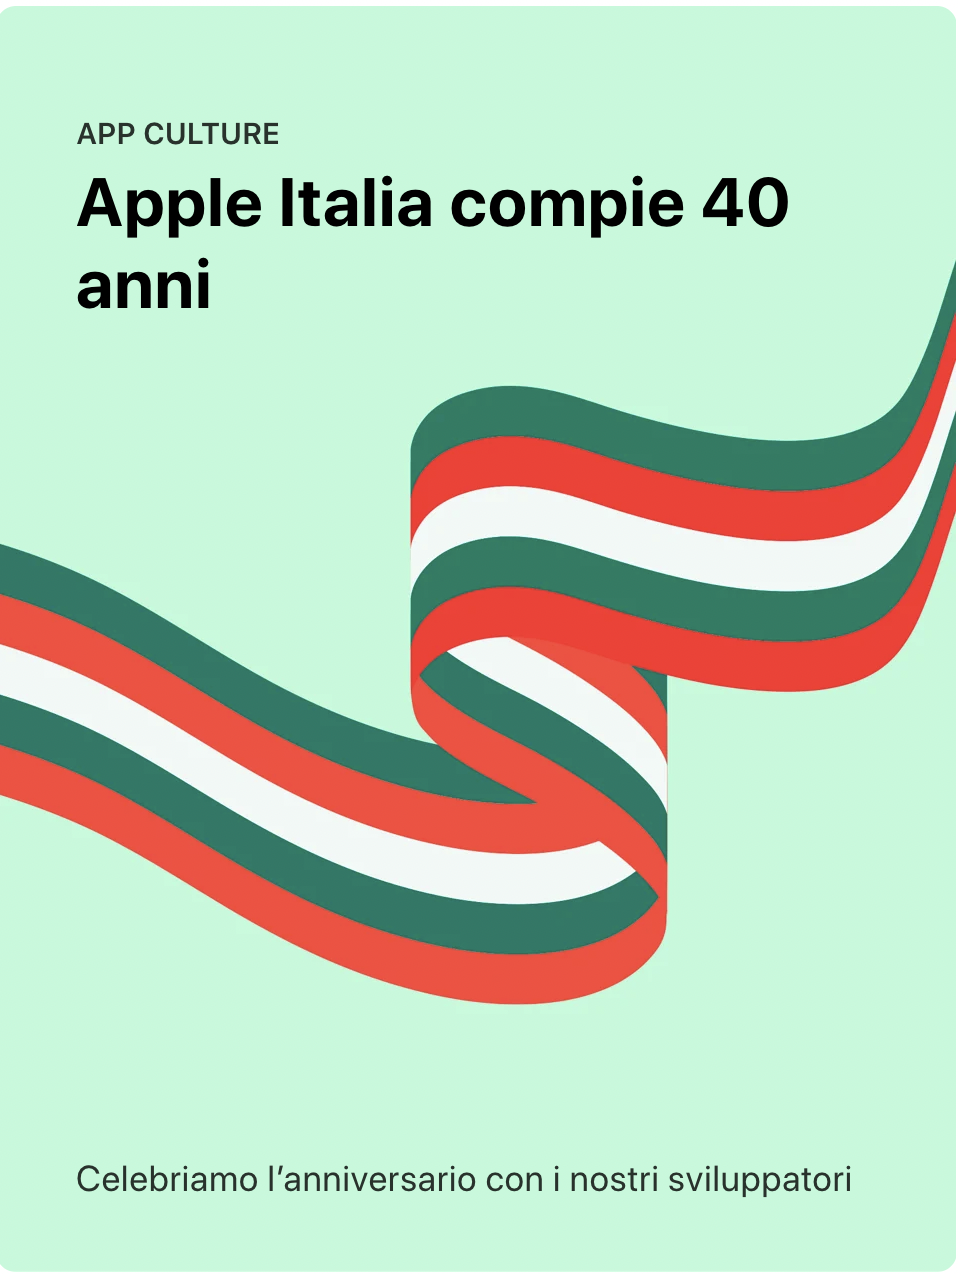 Apple Italia 40 anni